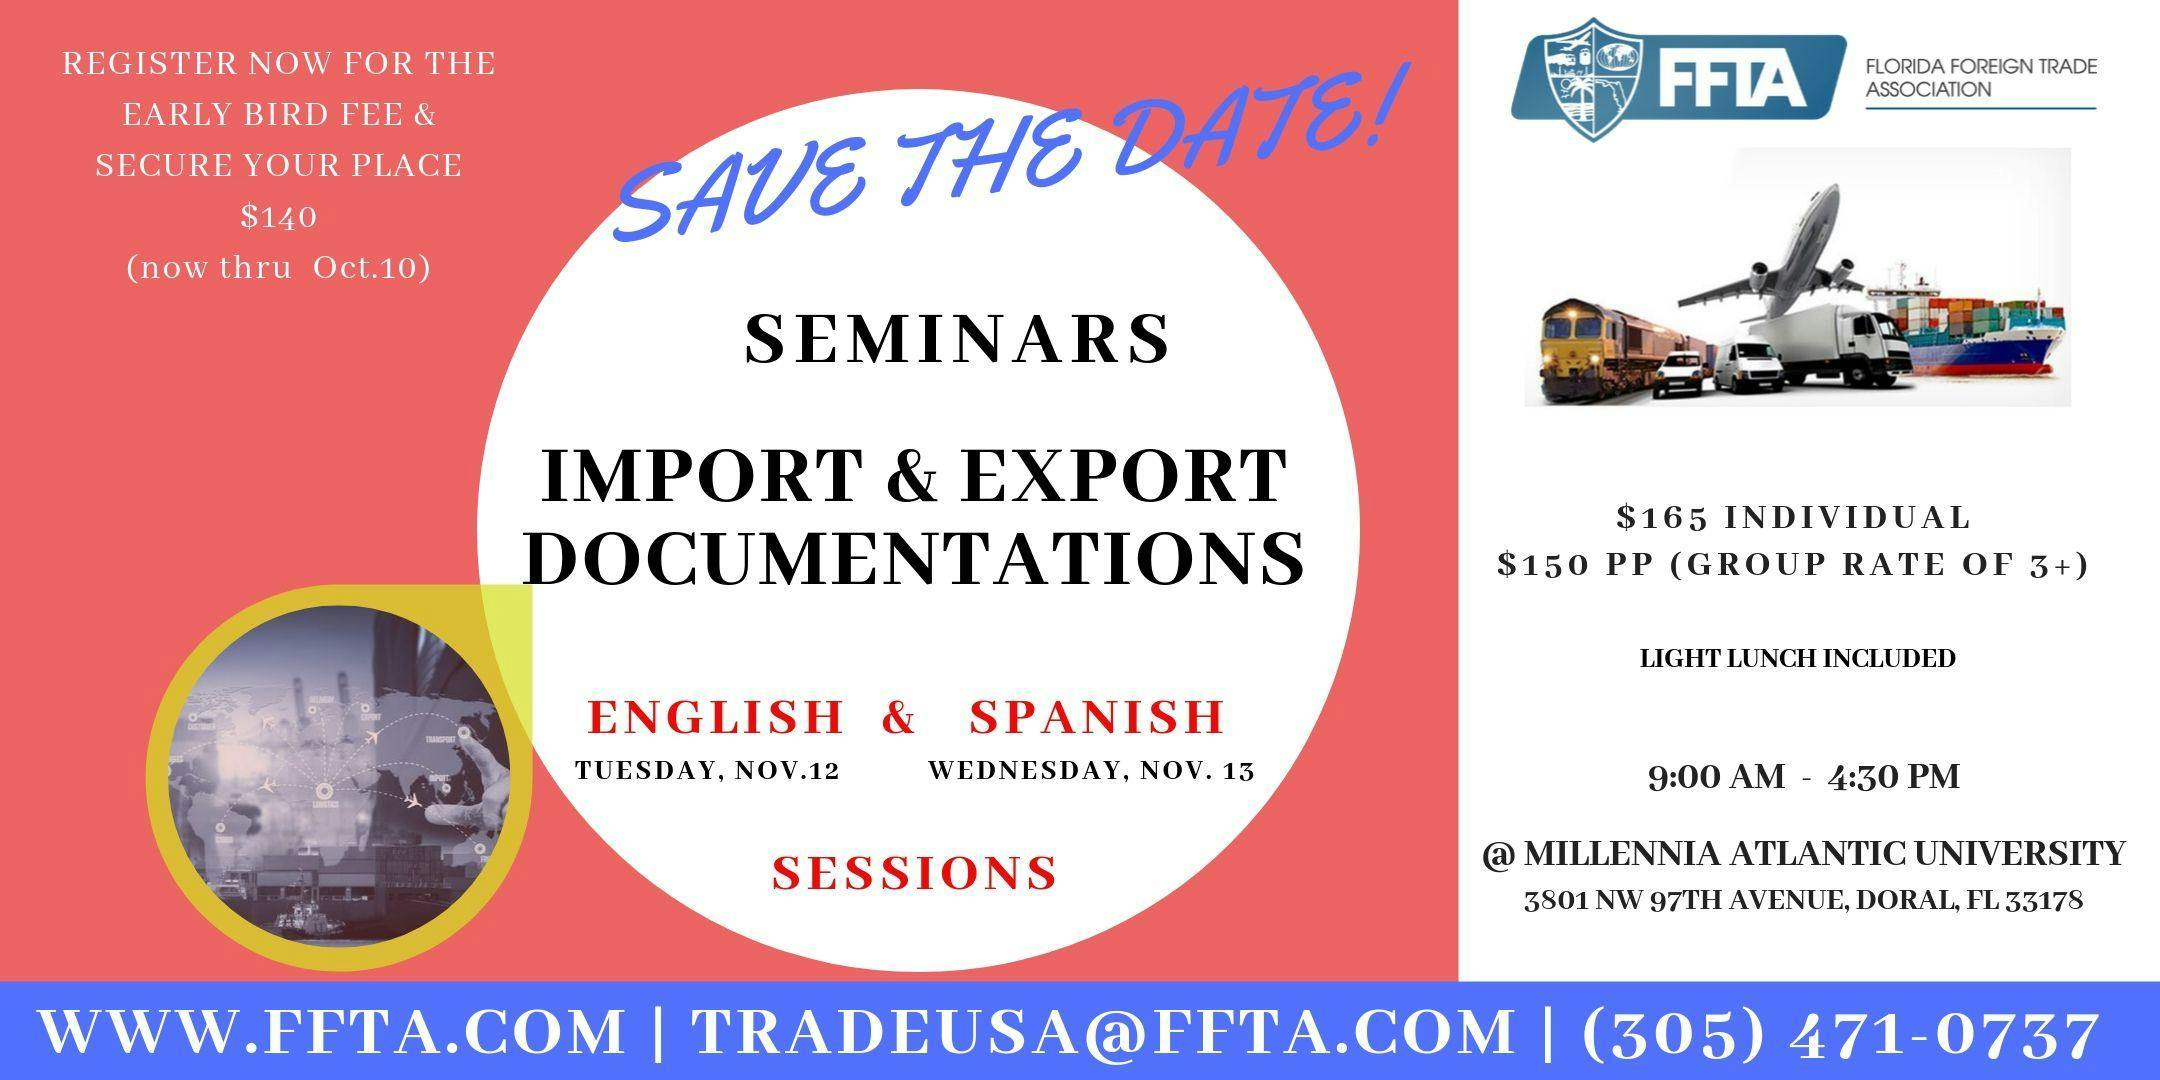 Export & Import Documentation Seminar - Nov.12, 2019